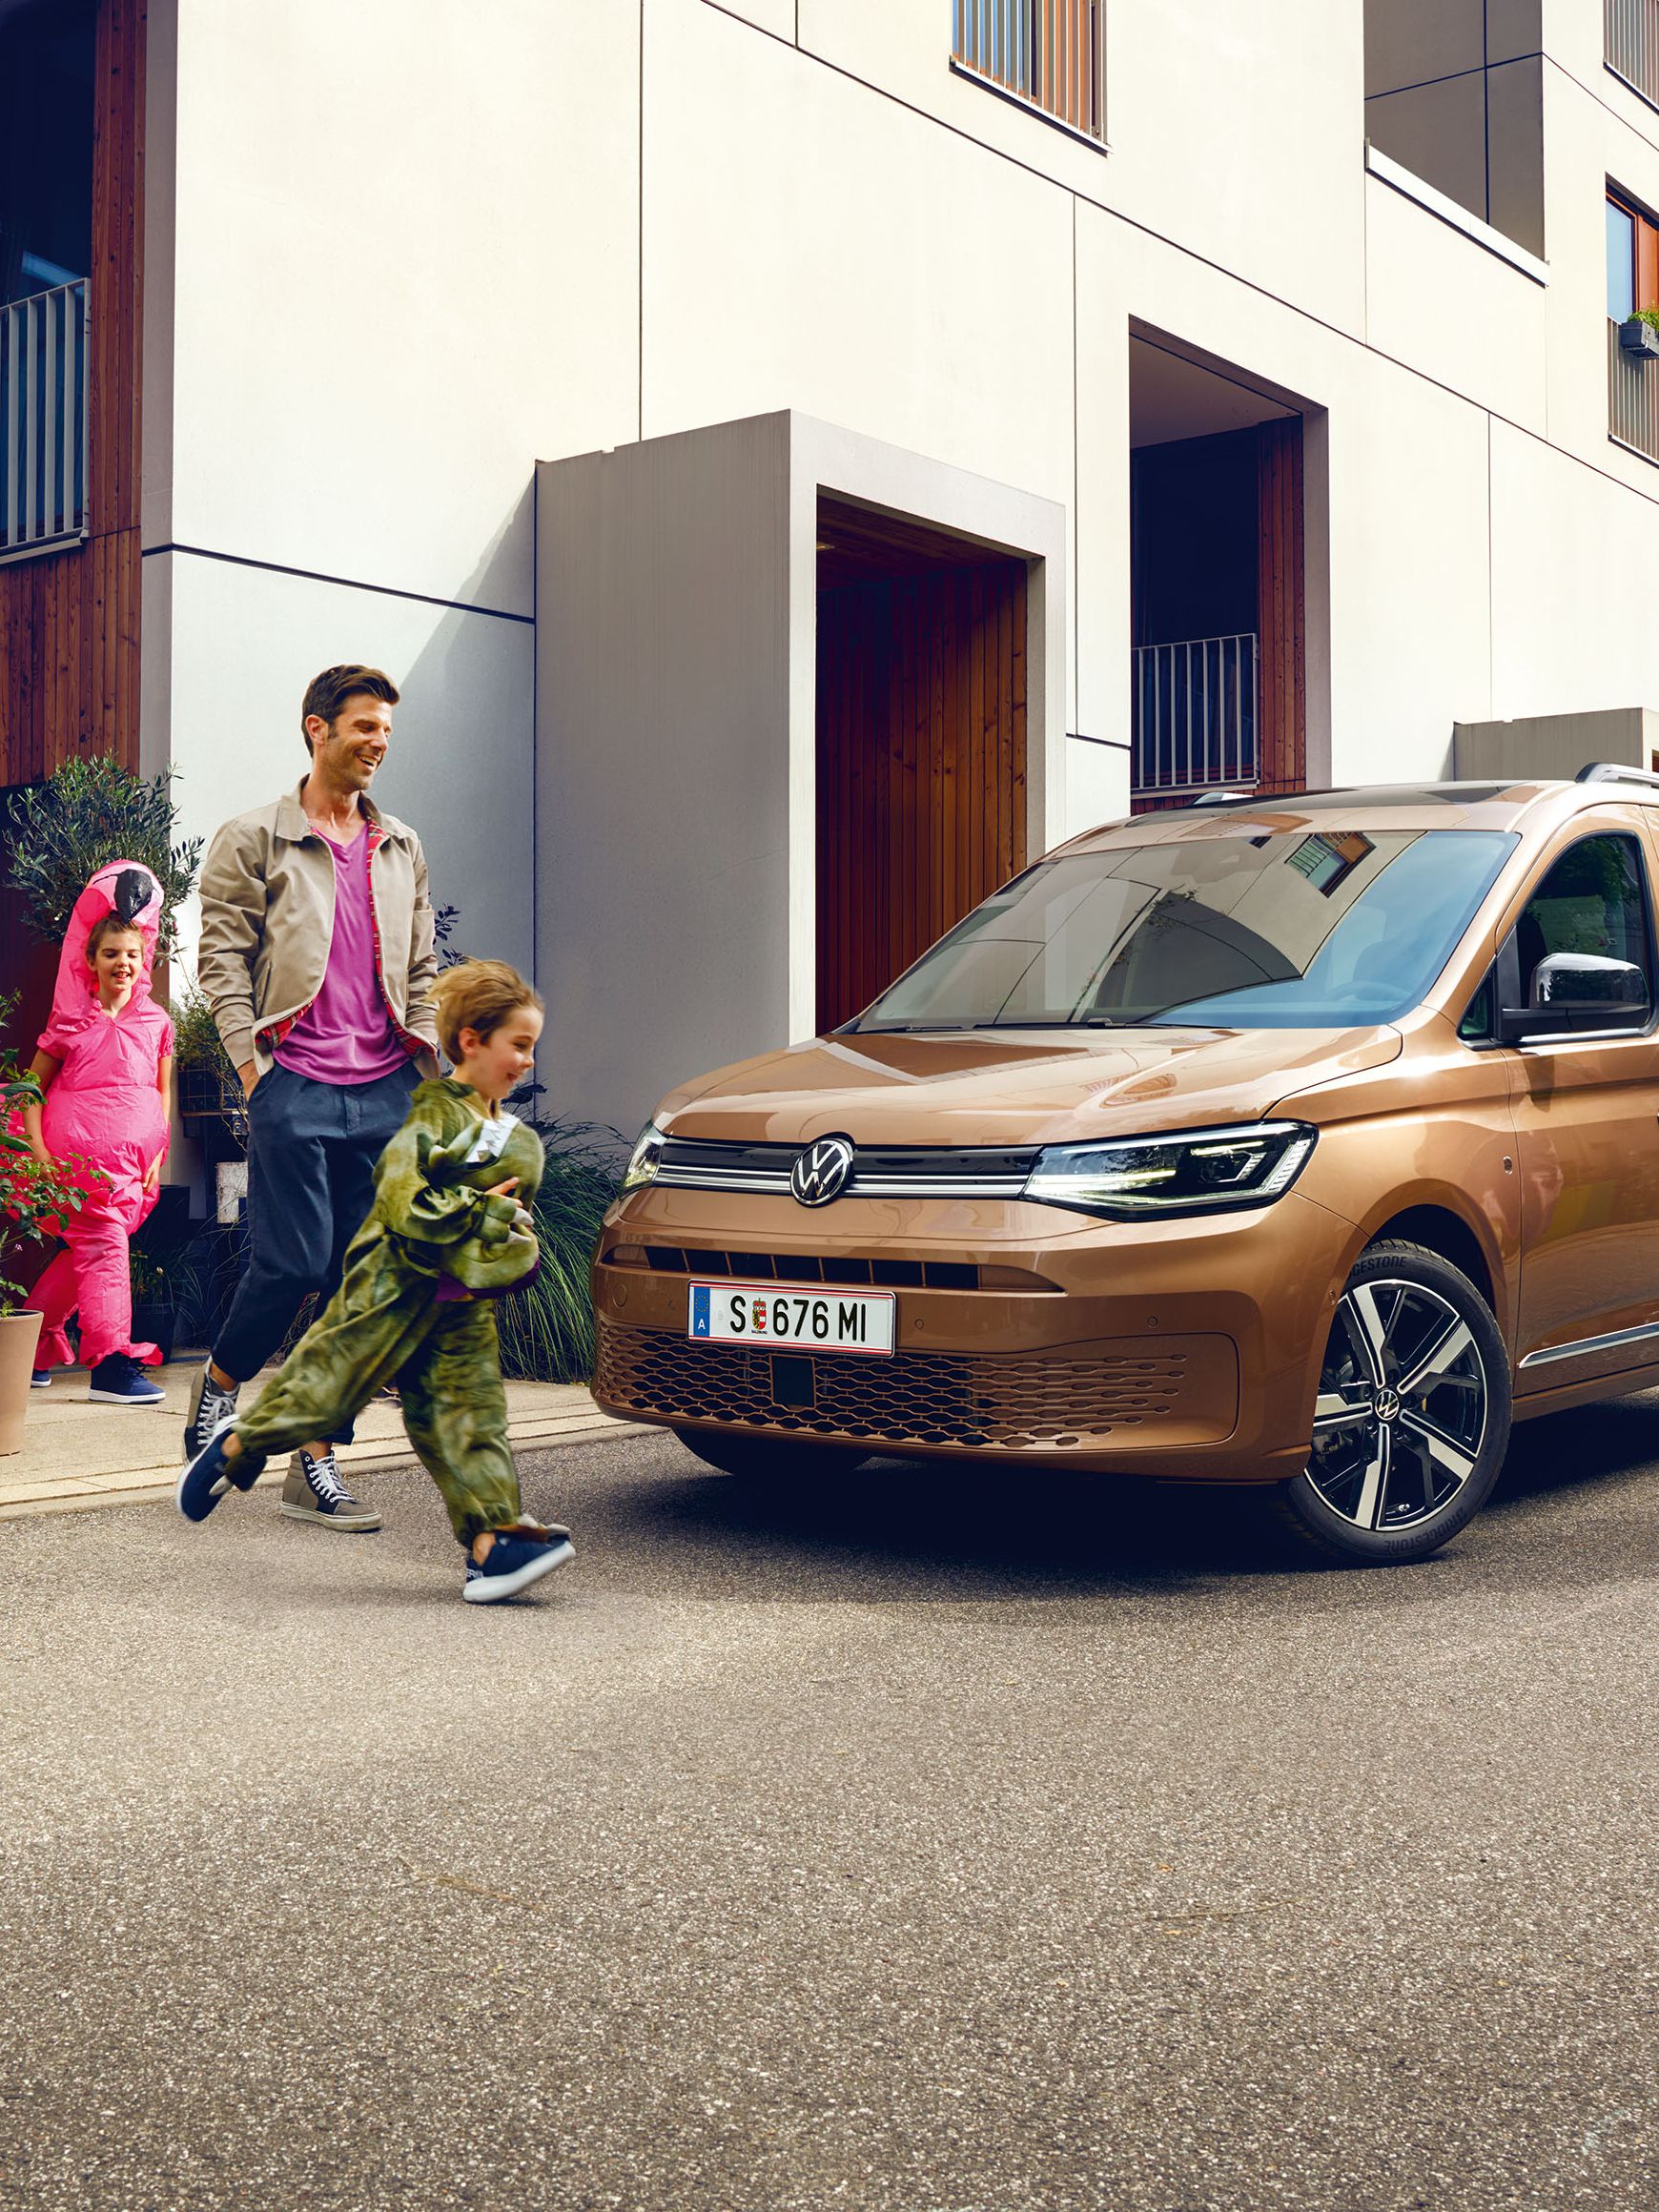 Eine junge Familie steigt vor der Wohnung in einen VW Caddy ein.